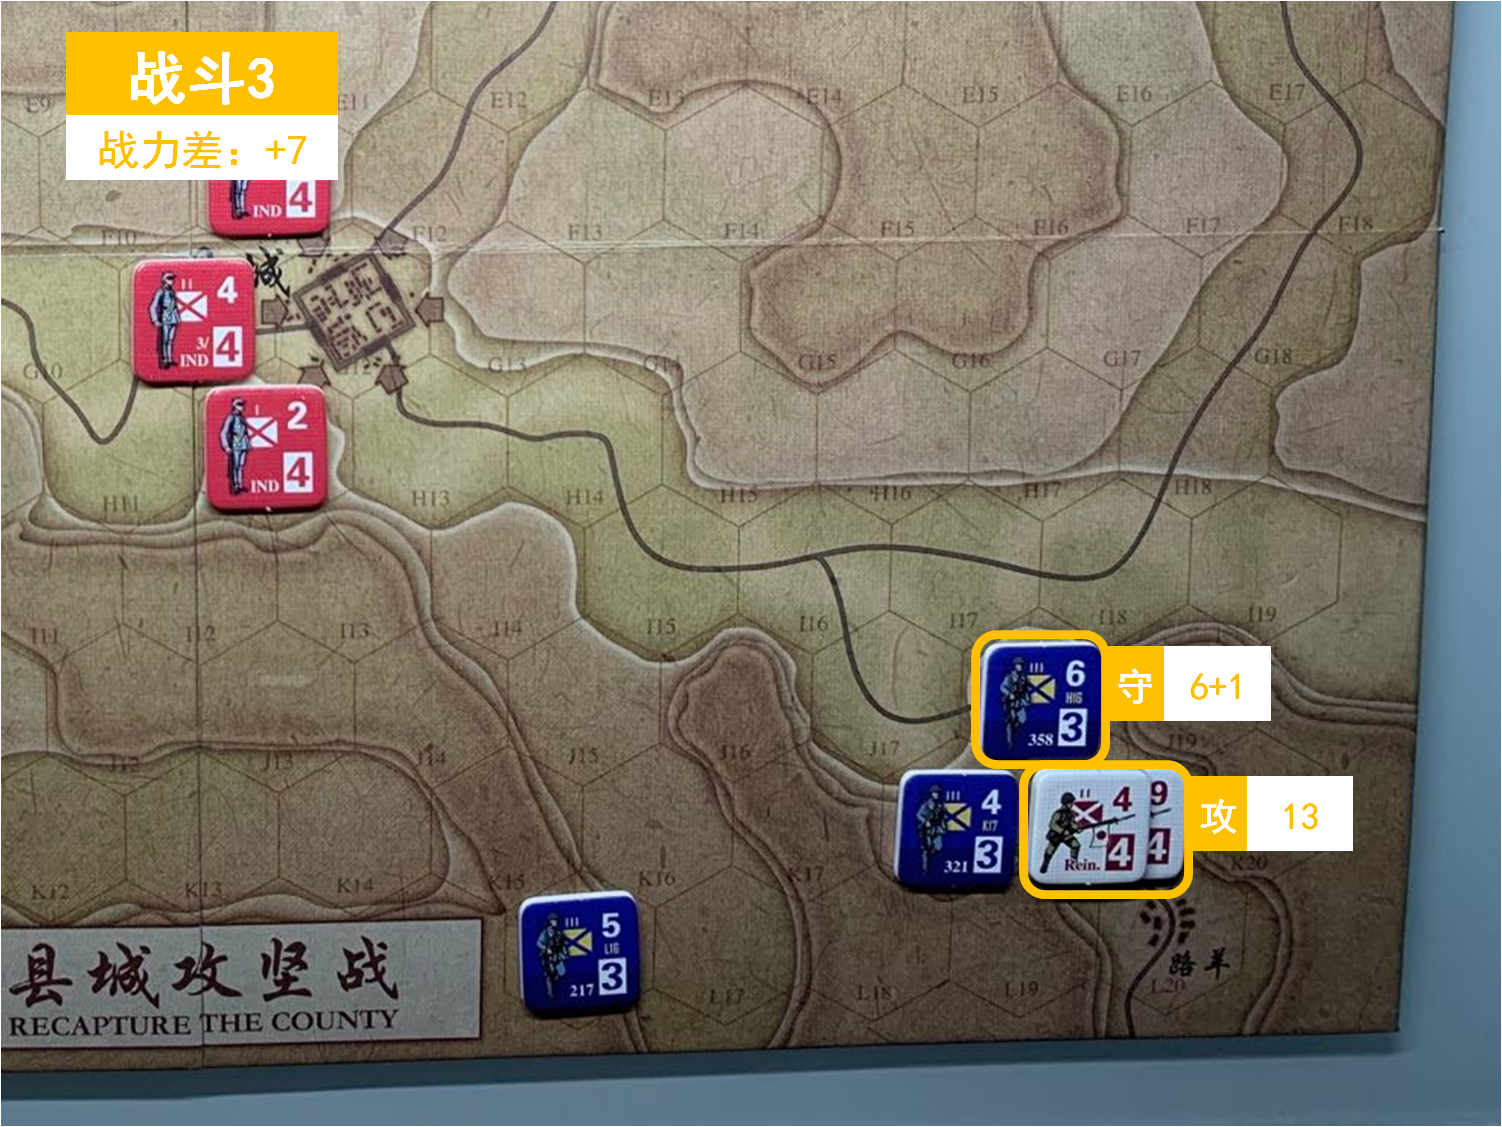 第一回合 日方戰鬥階段 戰鬥3 戰鬥力差值